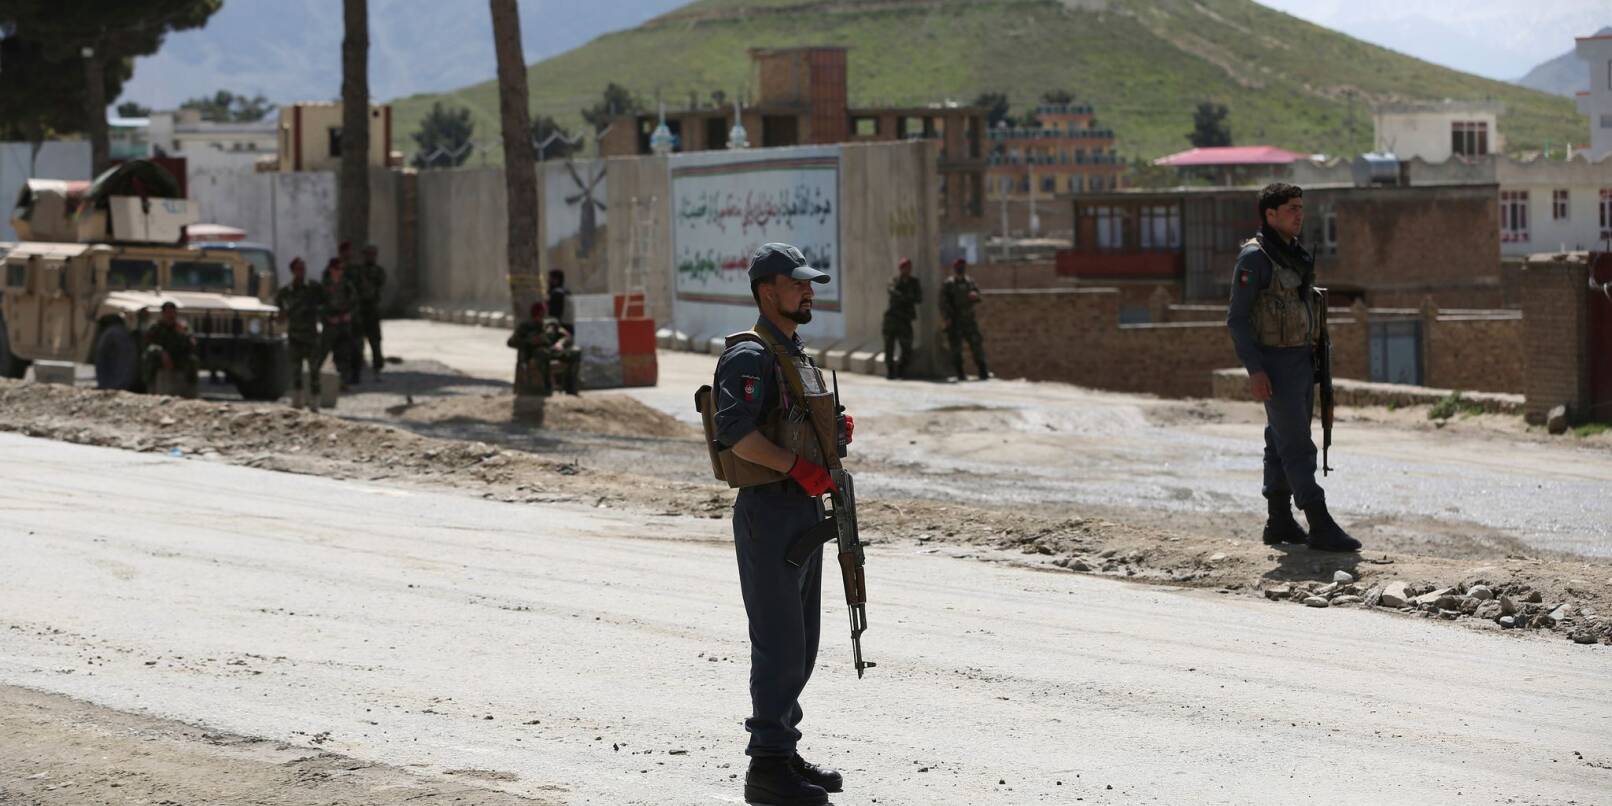 Afghanische Sicherheitskräfte stehen in Kabul Wache (Archivbild). Immer wieder kommt es in der afghanischen Hauptstadt zu Selbstmordanschlägen.